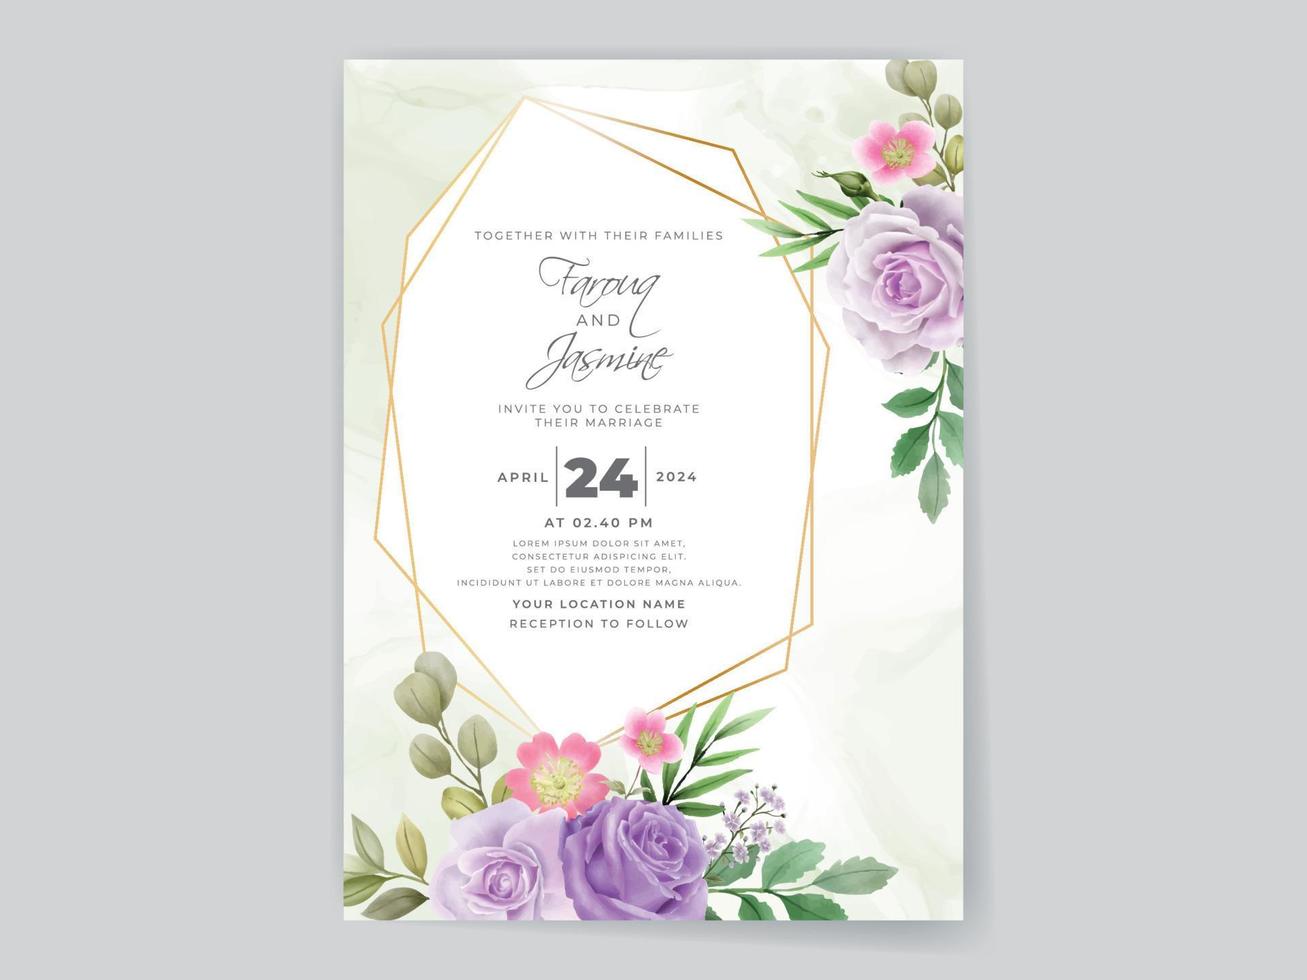 tarjeta de invitación de boda de rosas moradas románticas vector